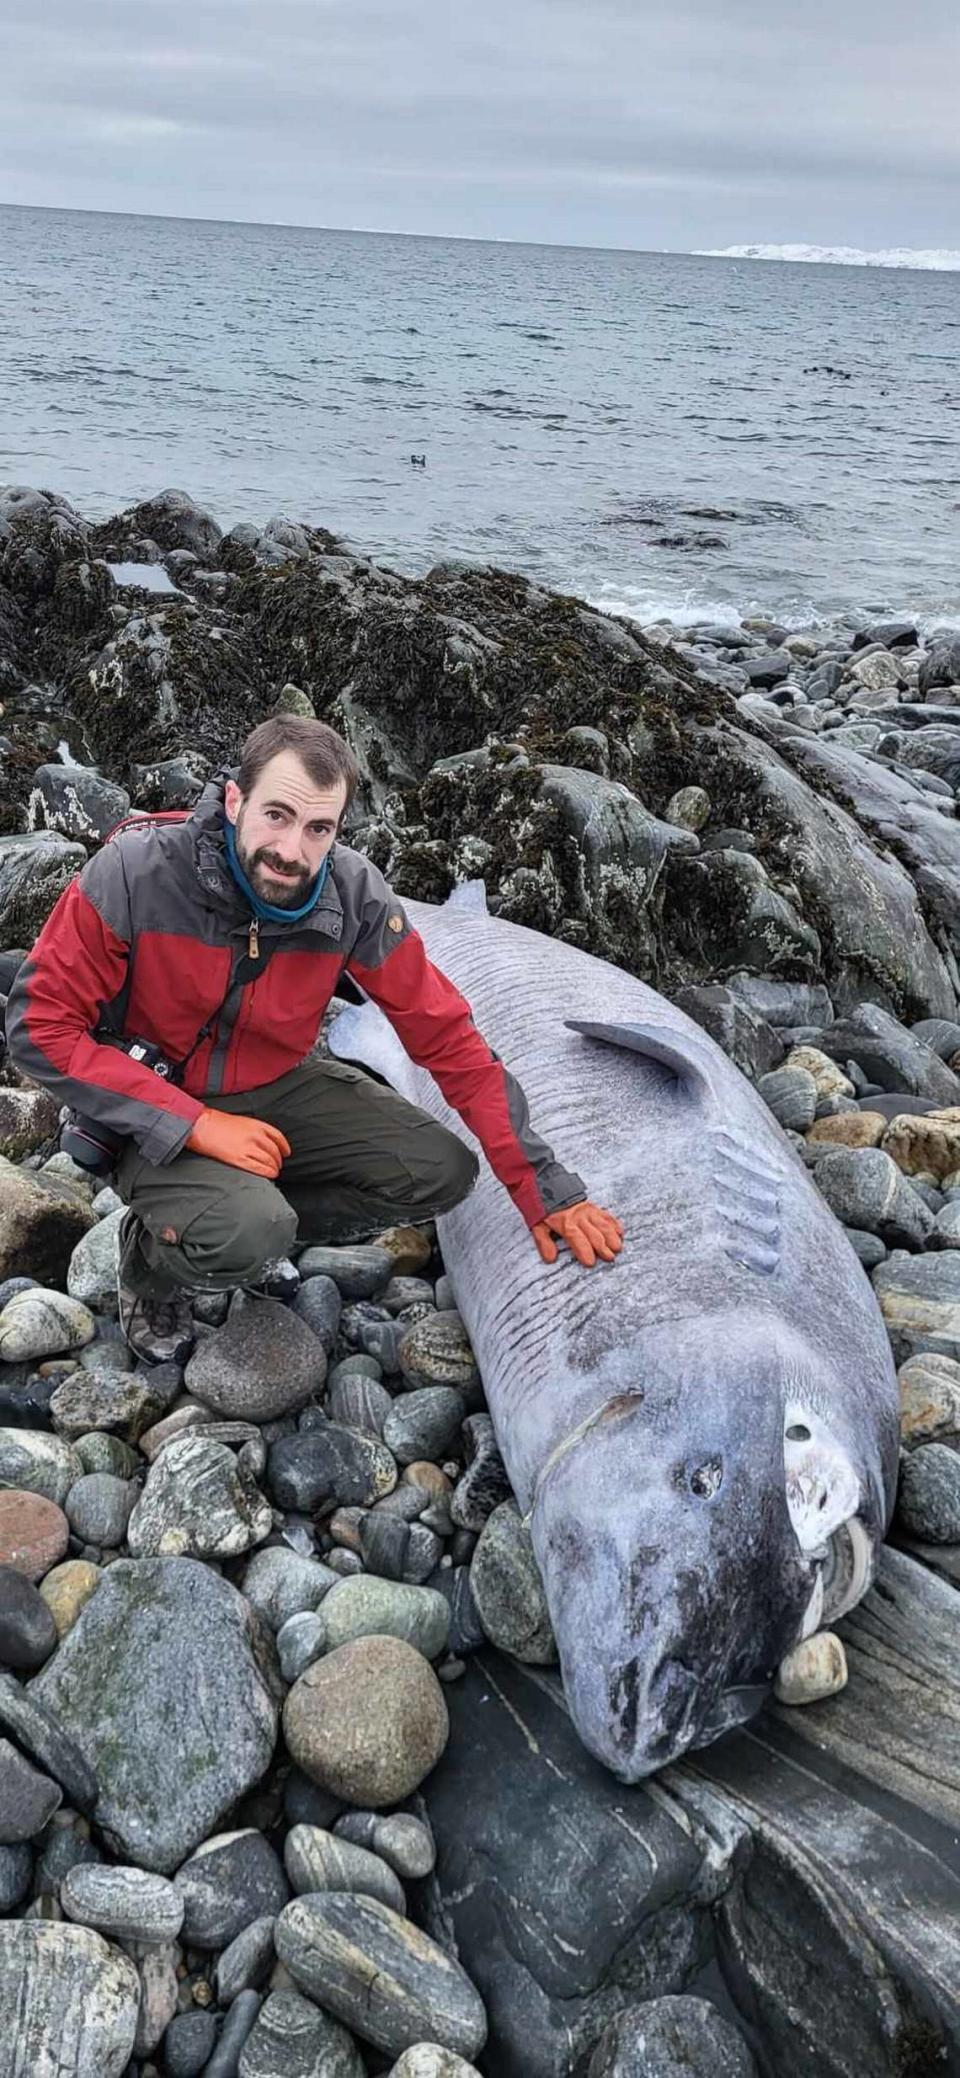 El biólogo Daniel Estévez-Barcia junto al tiburón de Groenlandia encontrado en Avannarliit. Foto del Instituto de Recursos Naturales de Groenlandia.